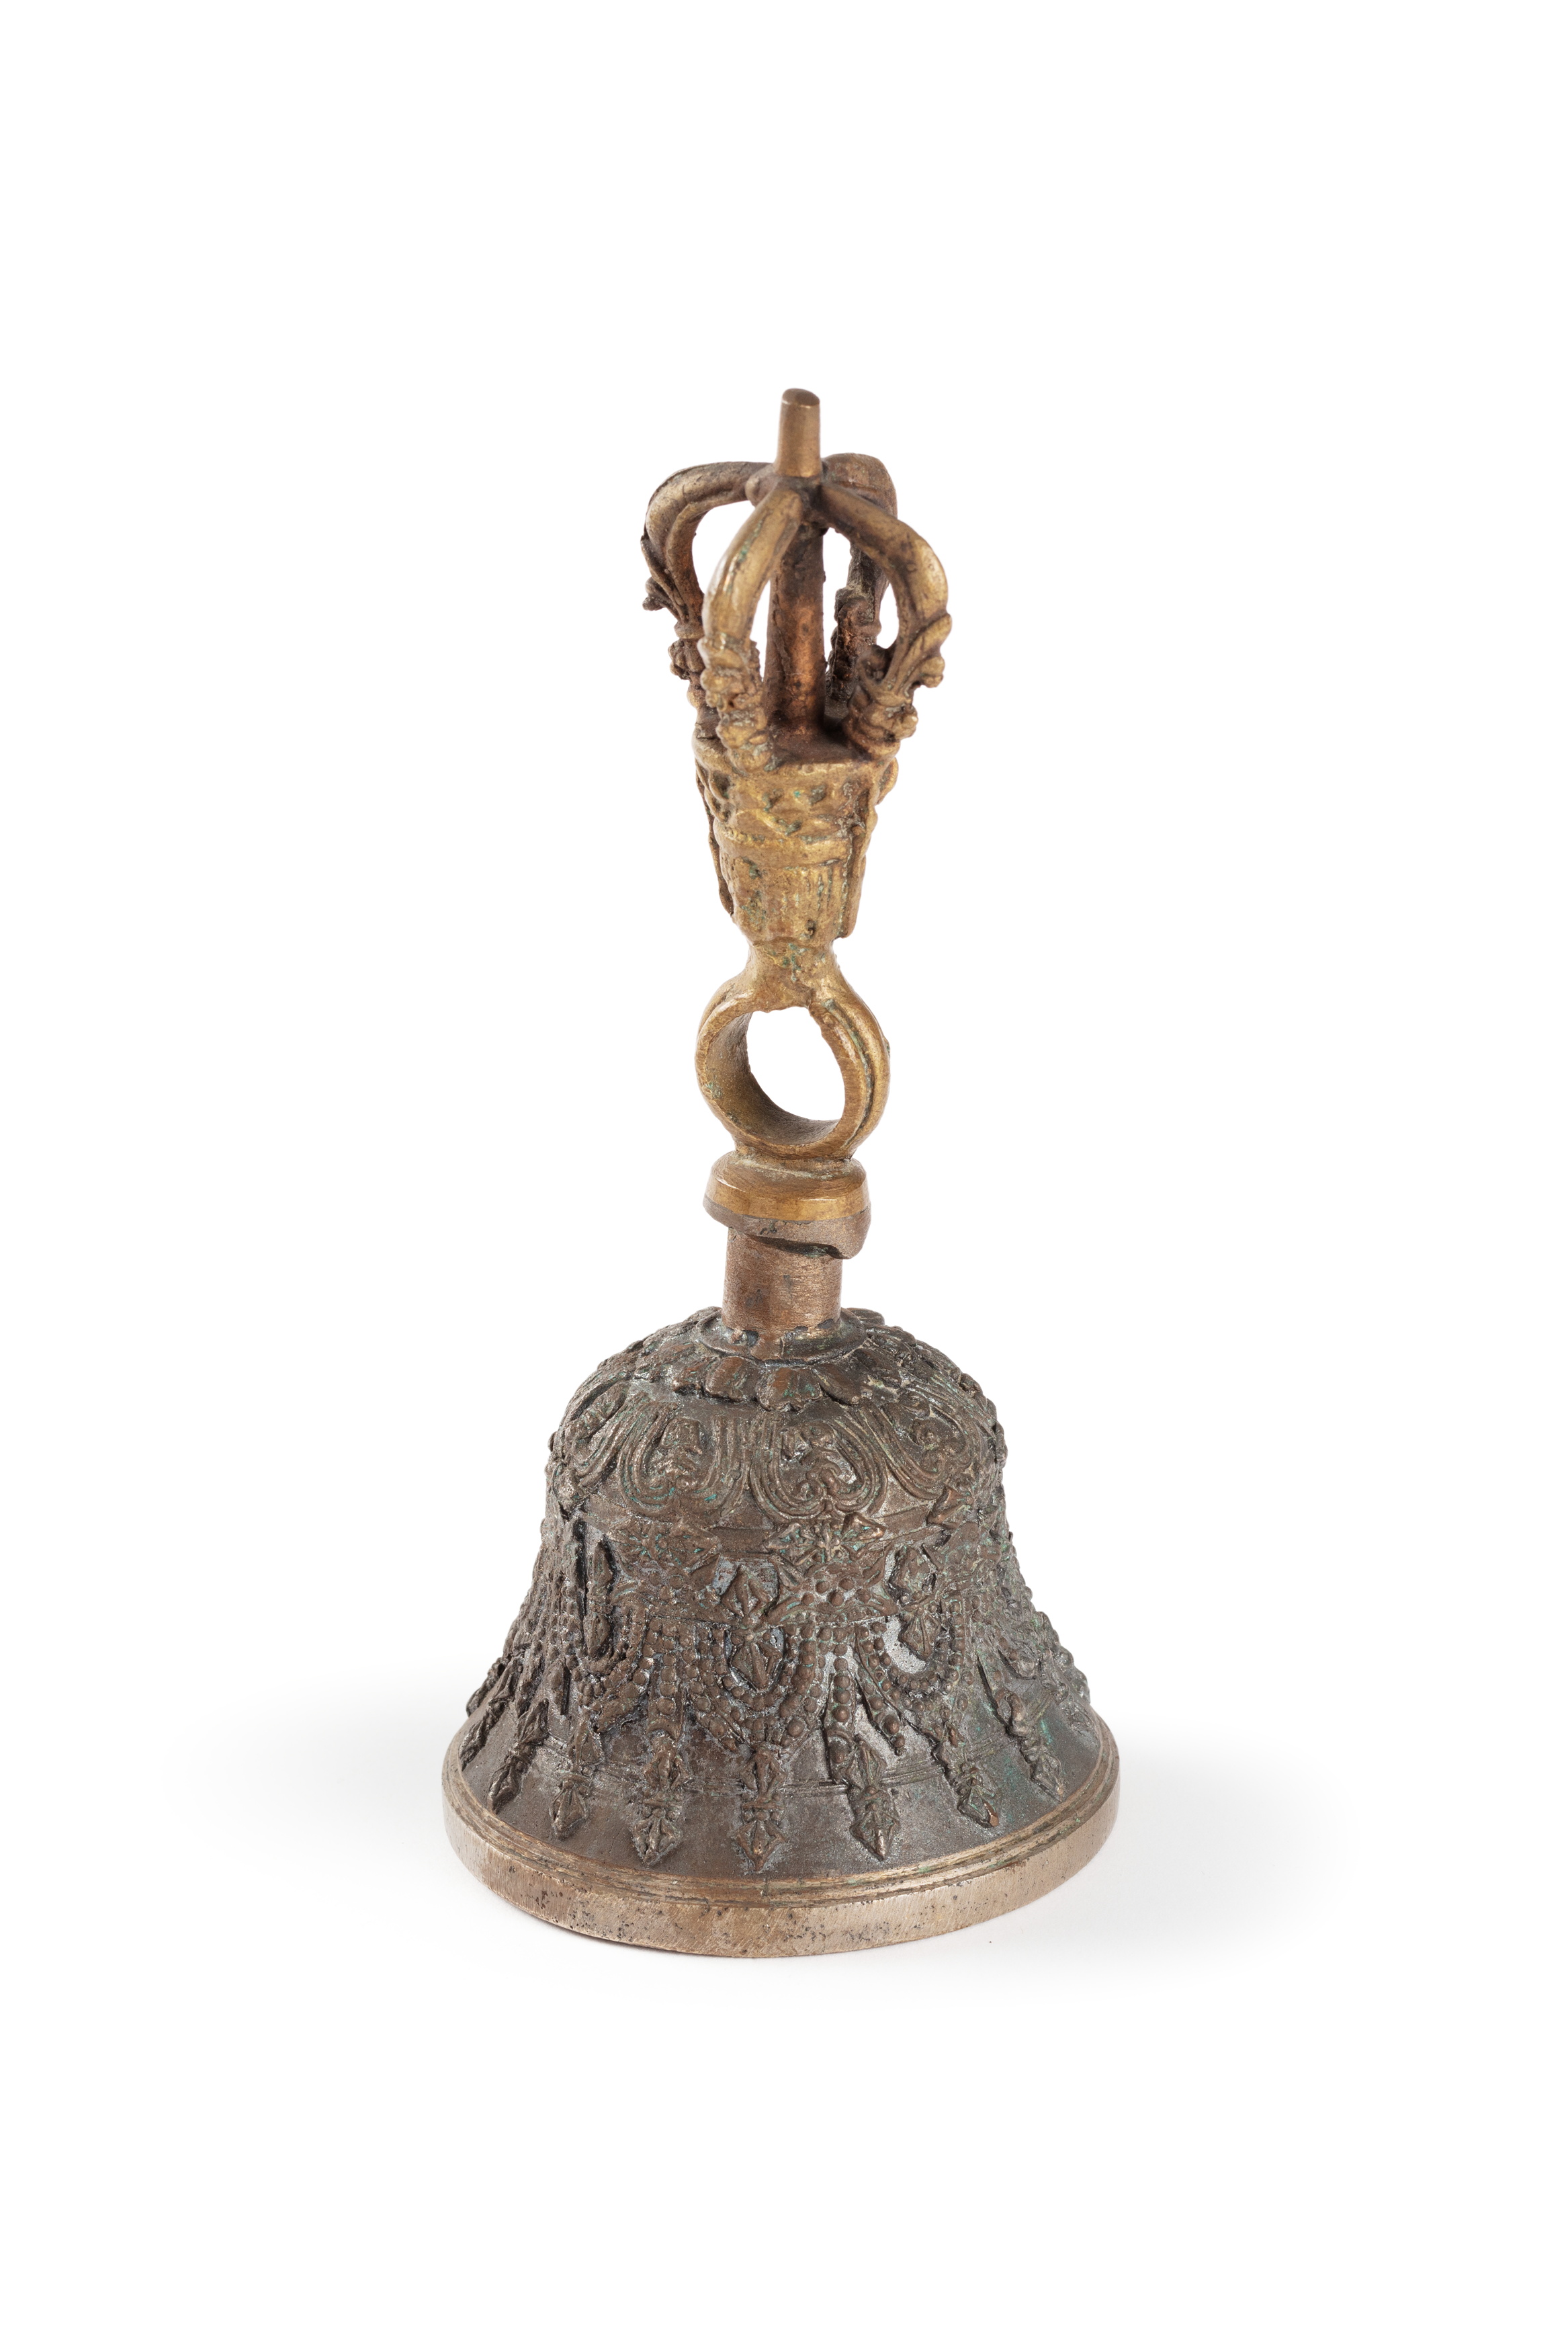 Drillbu ritual bell from Tibet